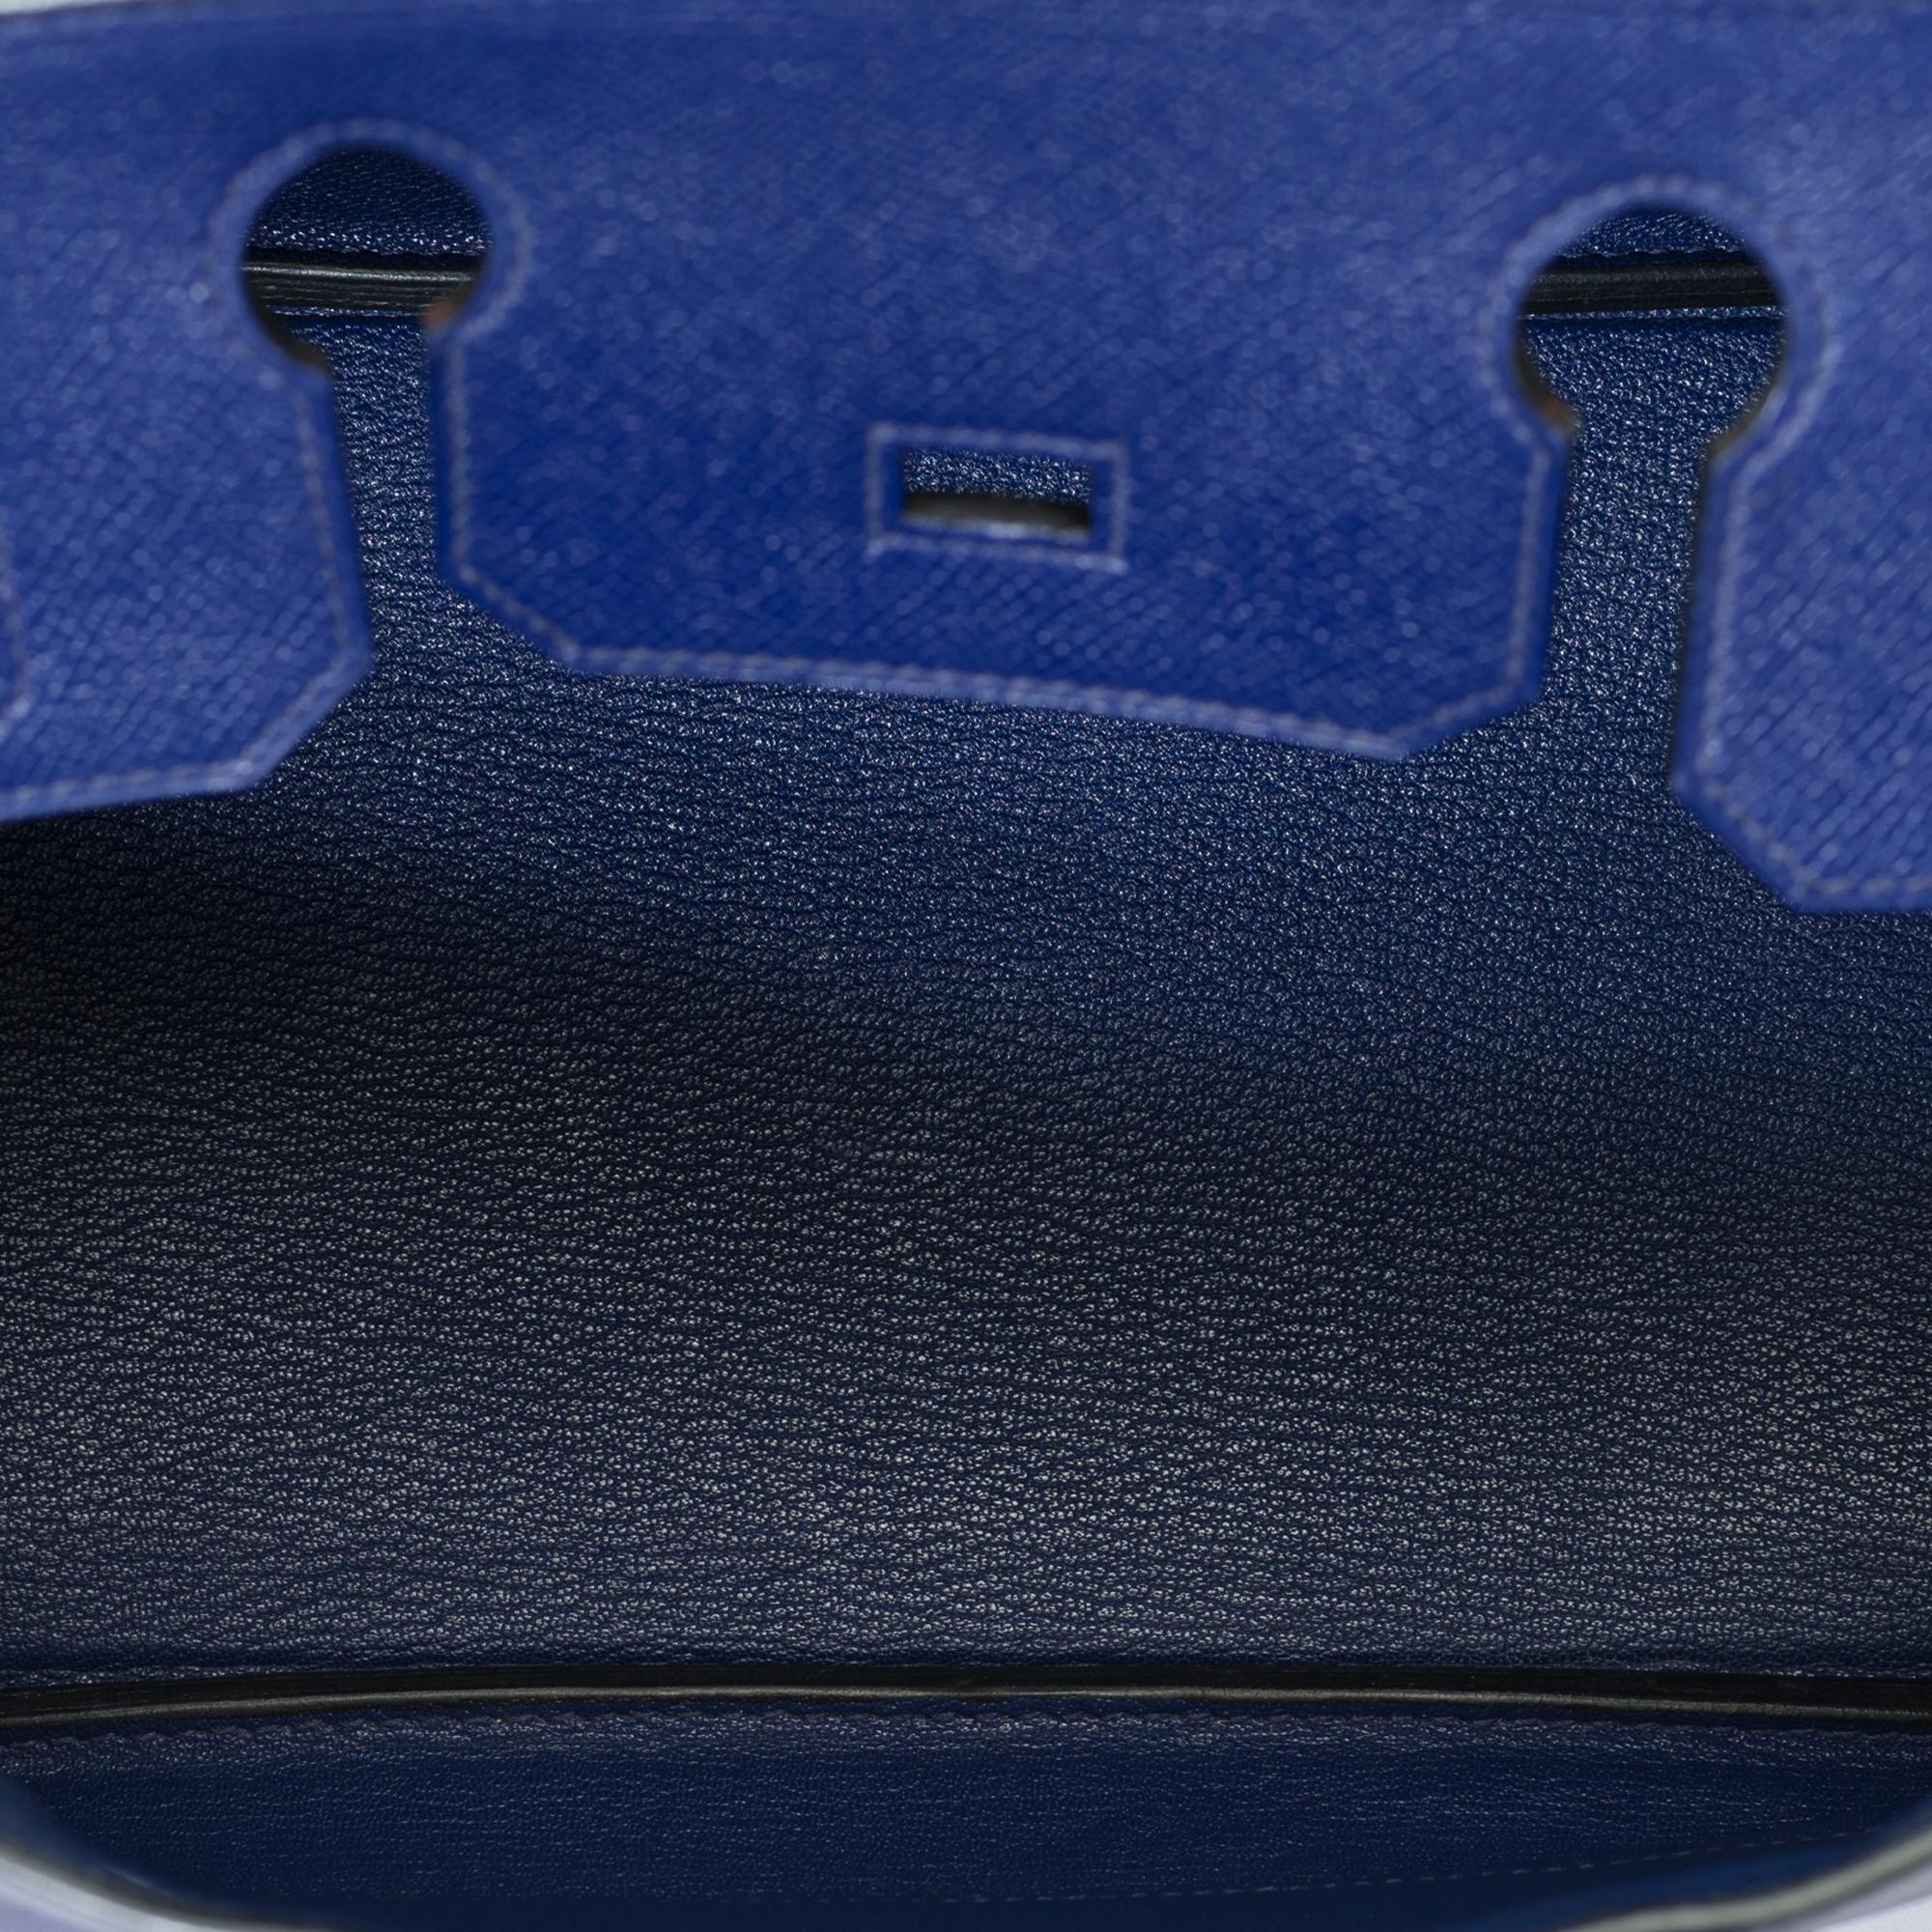 Stunning Hermes Birkin 30 handbag in Blue Sapphire Epsom leather, SHW For Sale 4